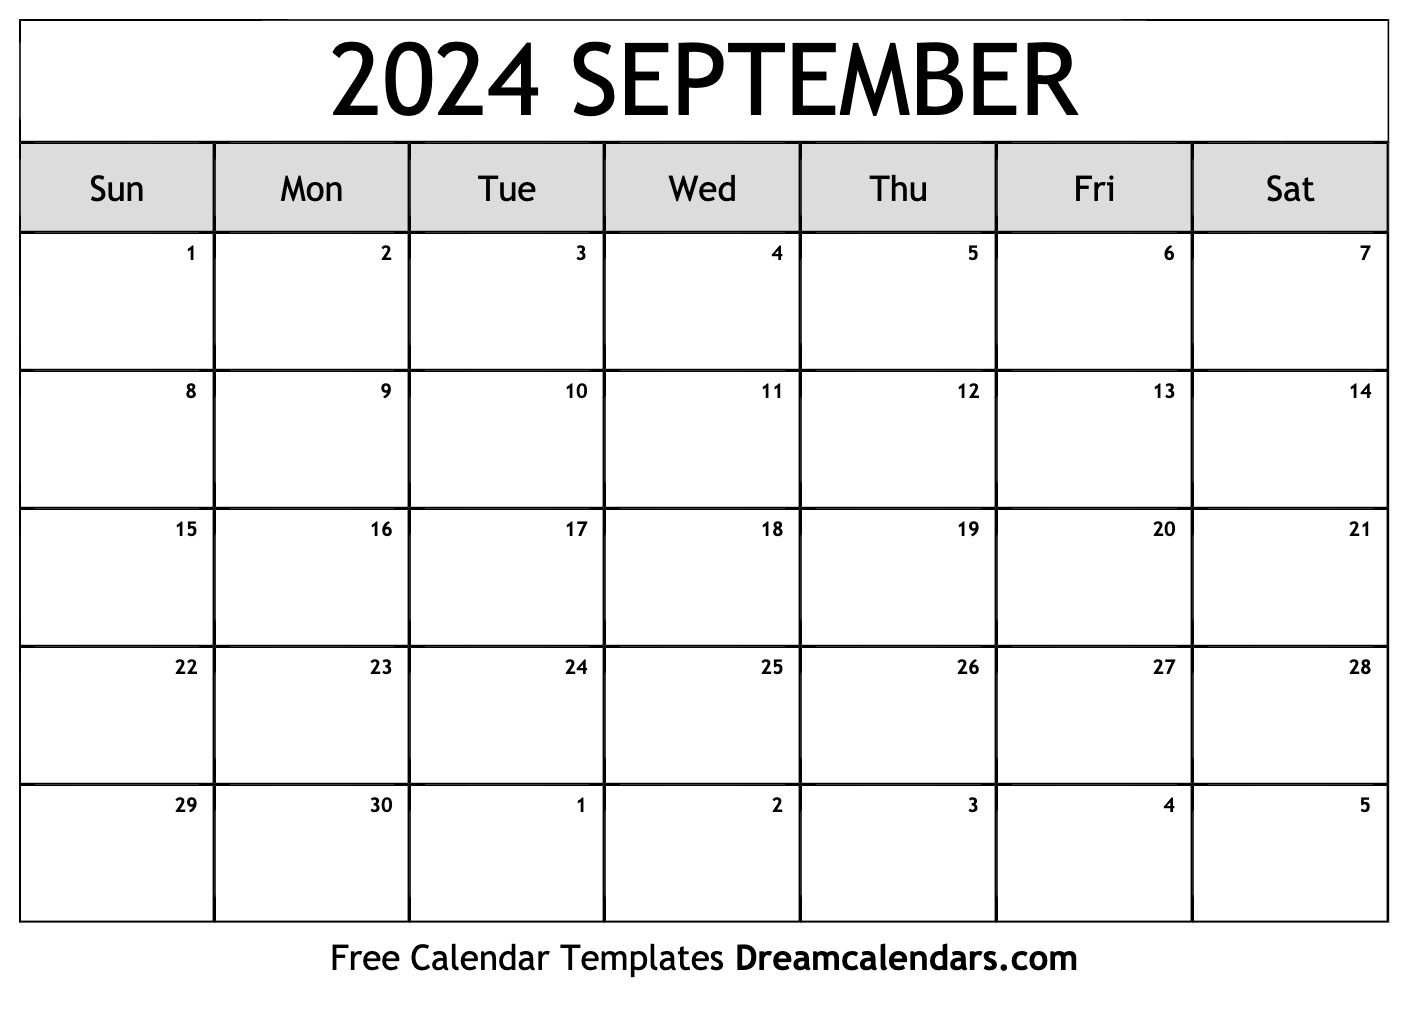 Calendario Escolar 2024 Usa Latest Perfect Awasome List Of New 